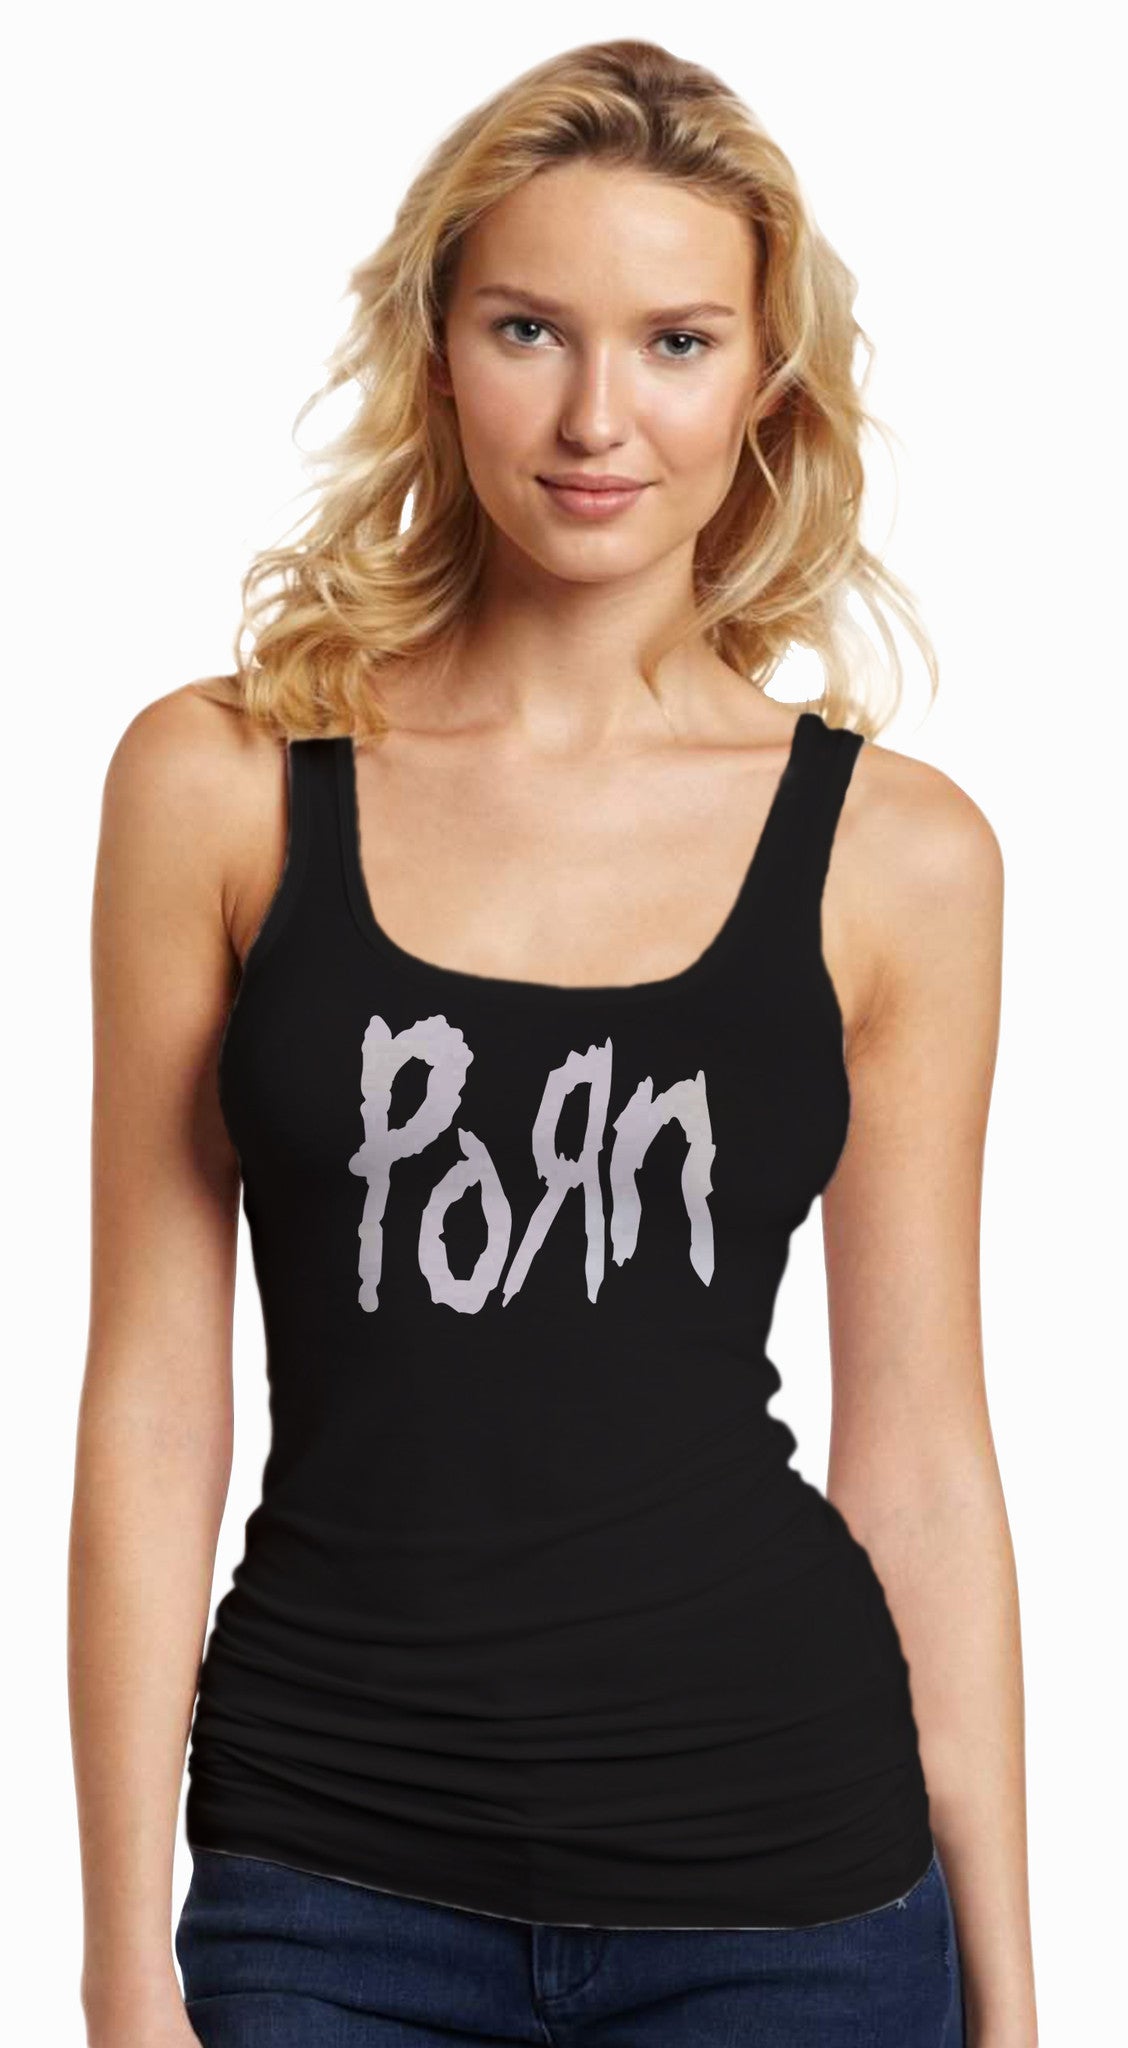 Porn Black Tanktop T-shirt for Women - TshirtNow.net - 1